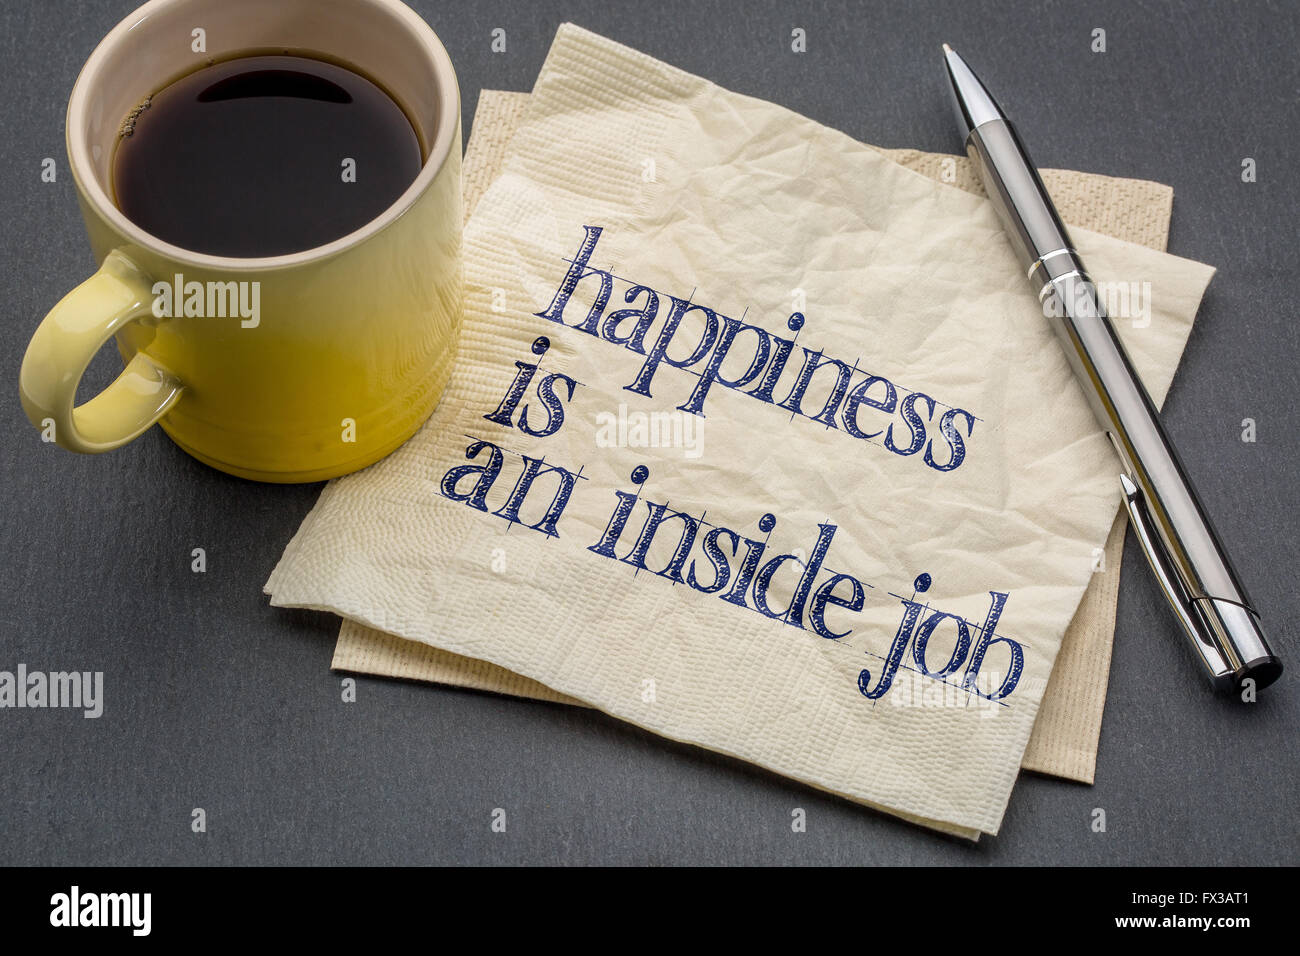 Le bonheur est un travail intérieur - écriture d'inspiration sur une serviette avec tasse de café contre l'arrière-plan gris ardoise Banque D'Images